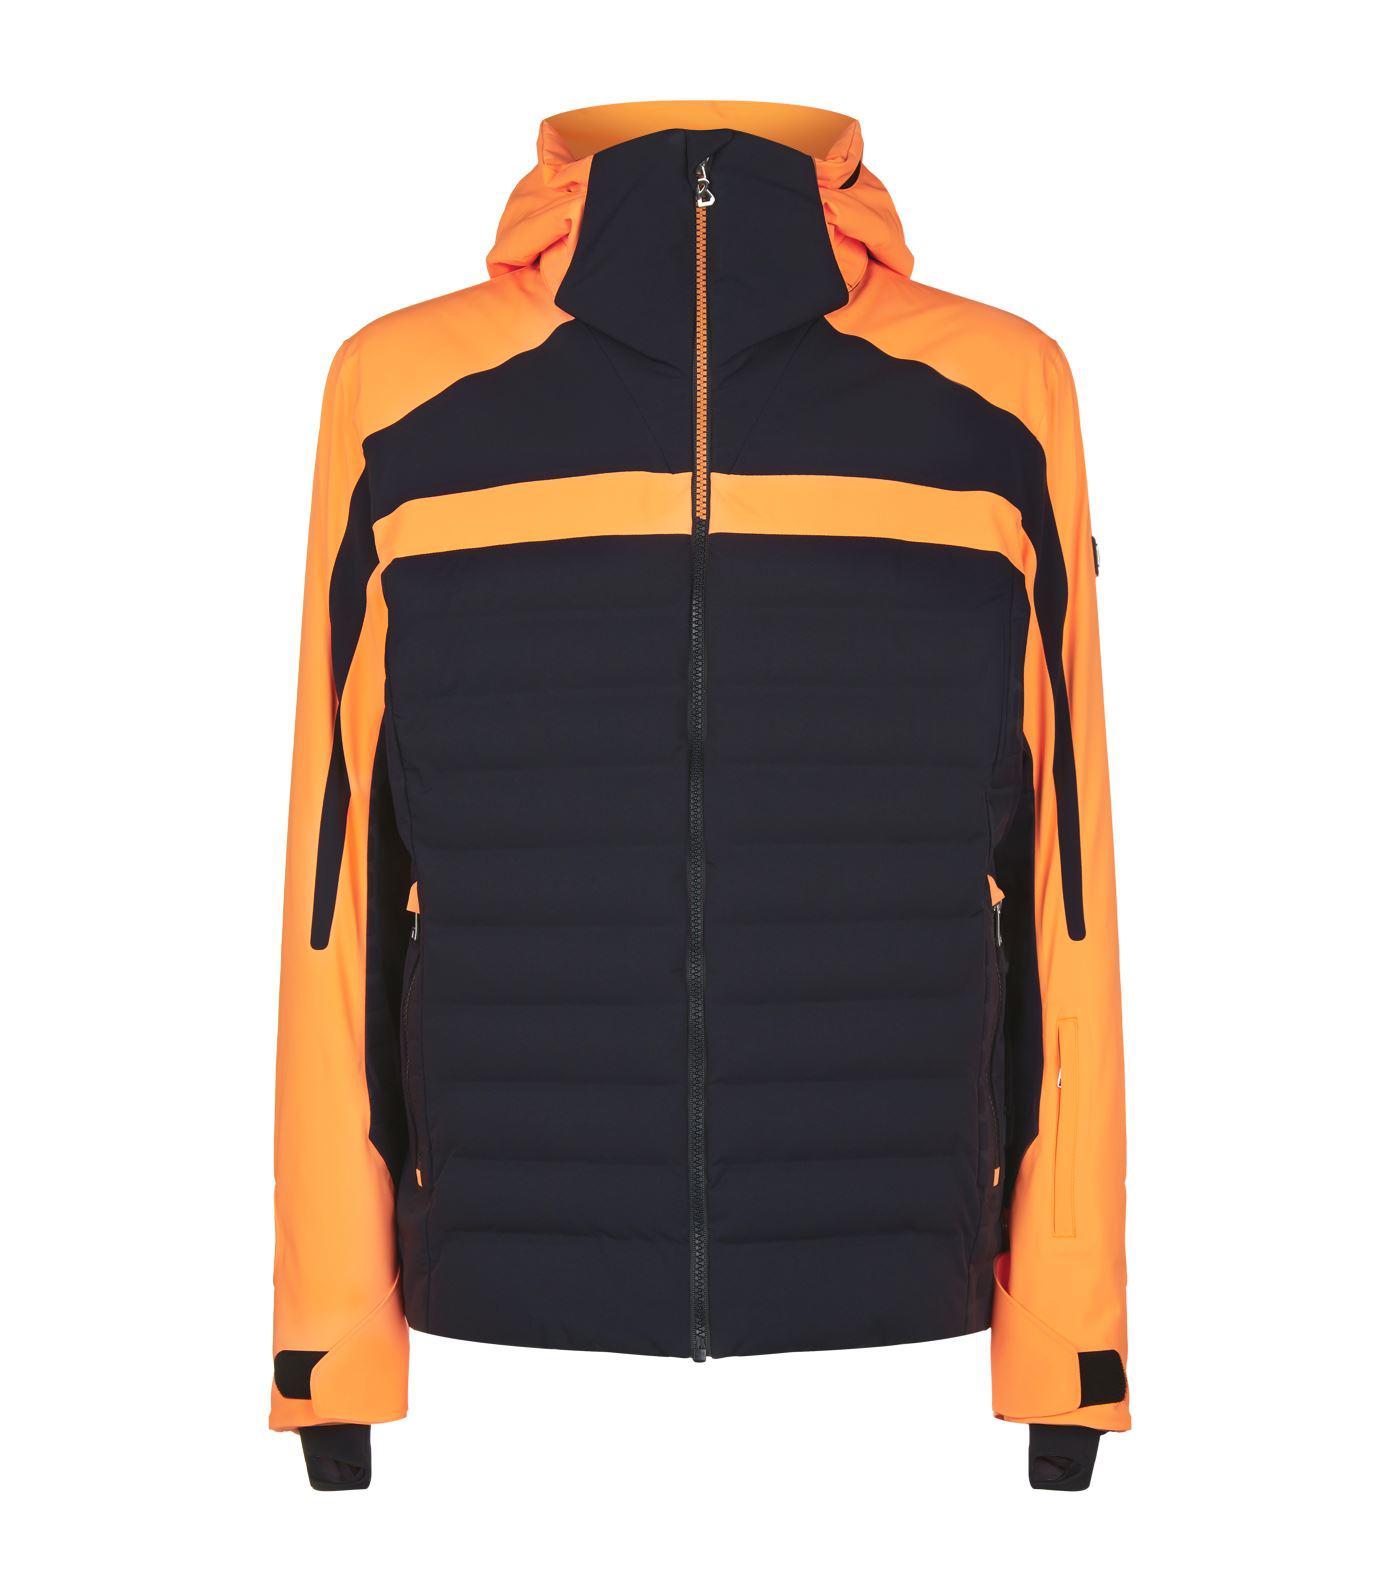 Bogner Lech Ski Jacket in Orange for Men - Lyst